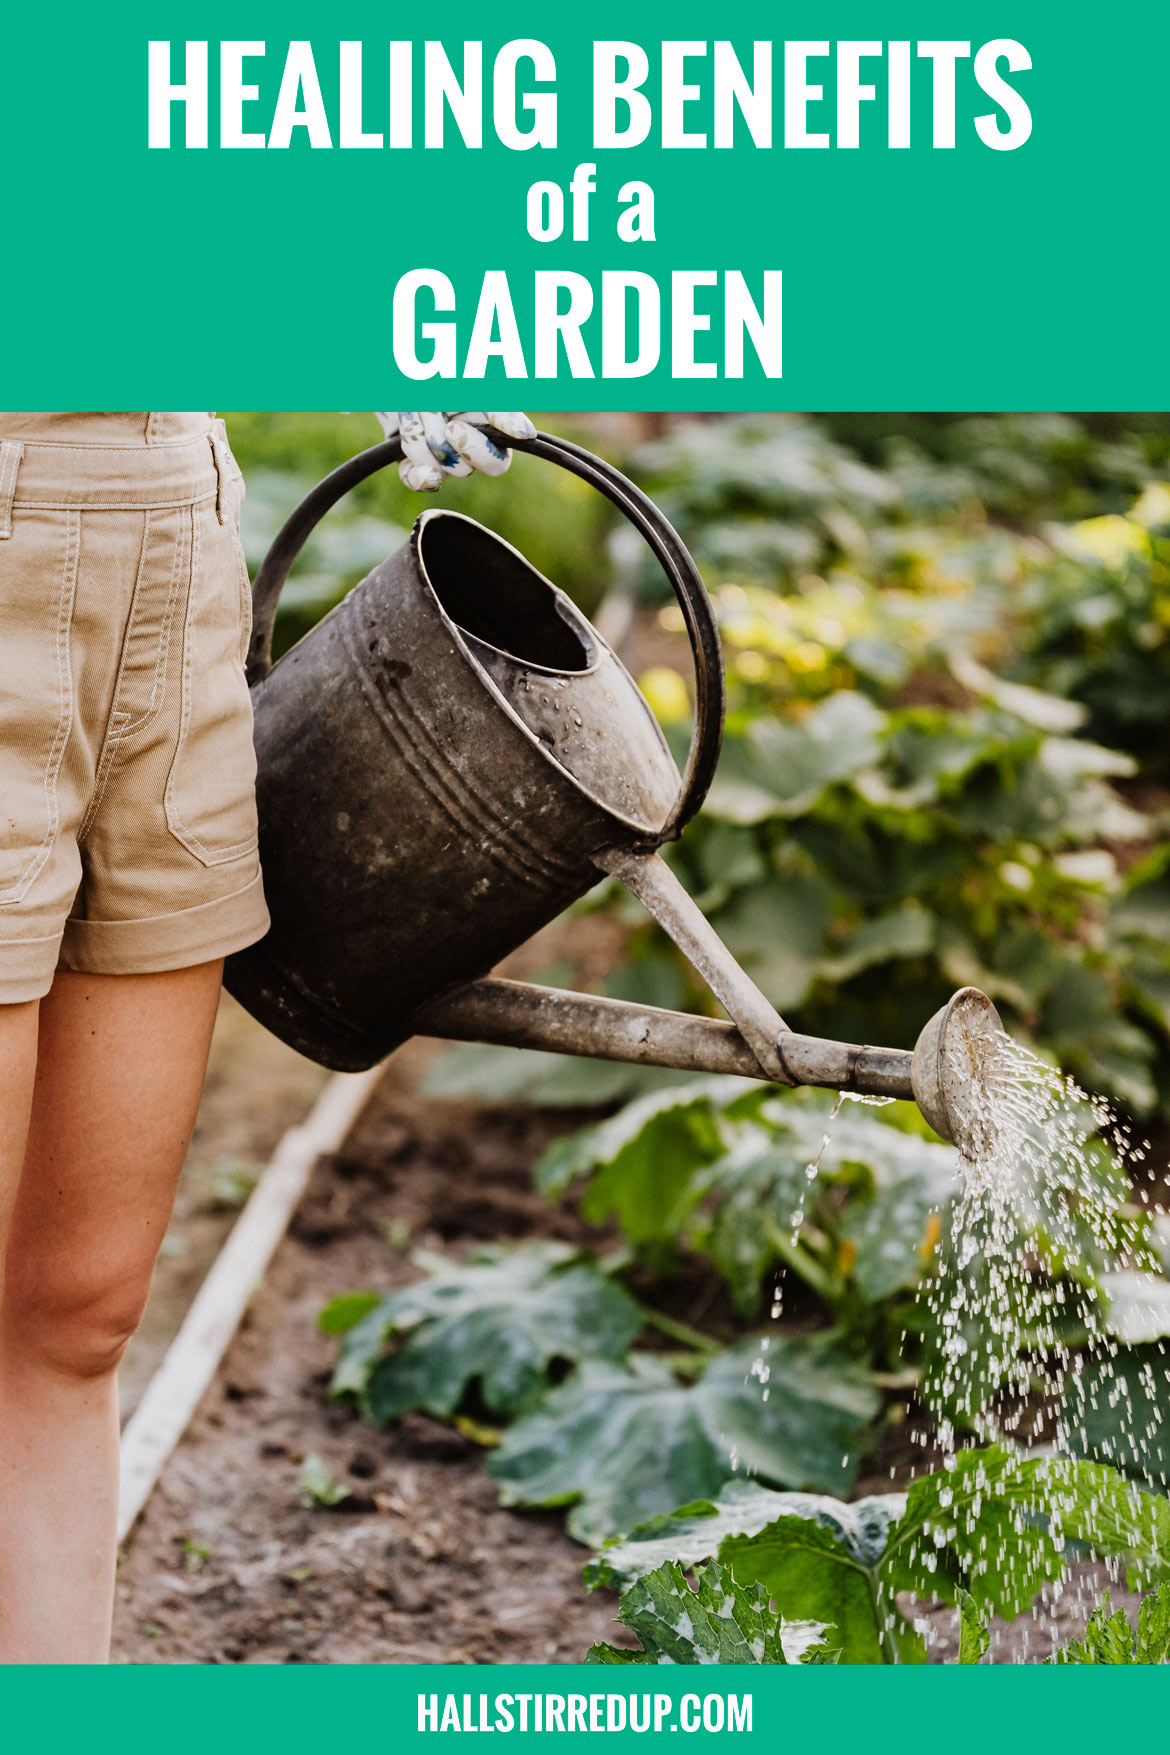 Healing benefits of a garden